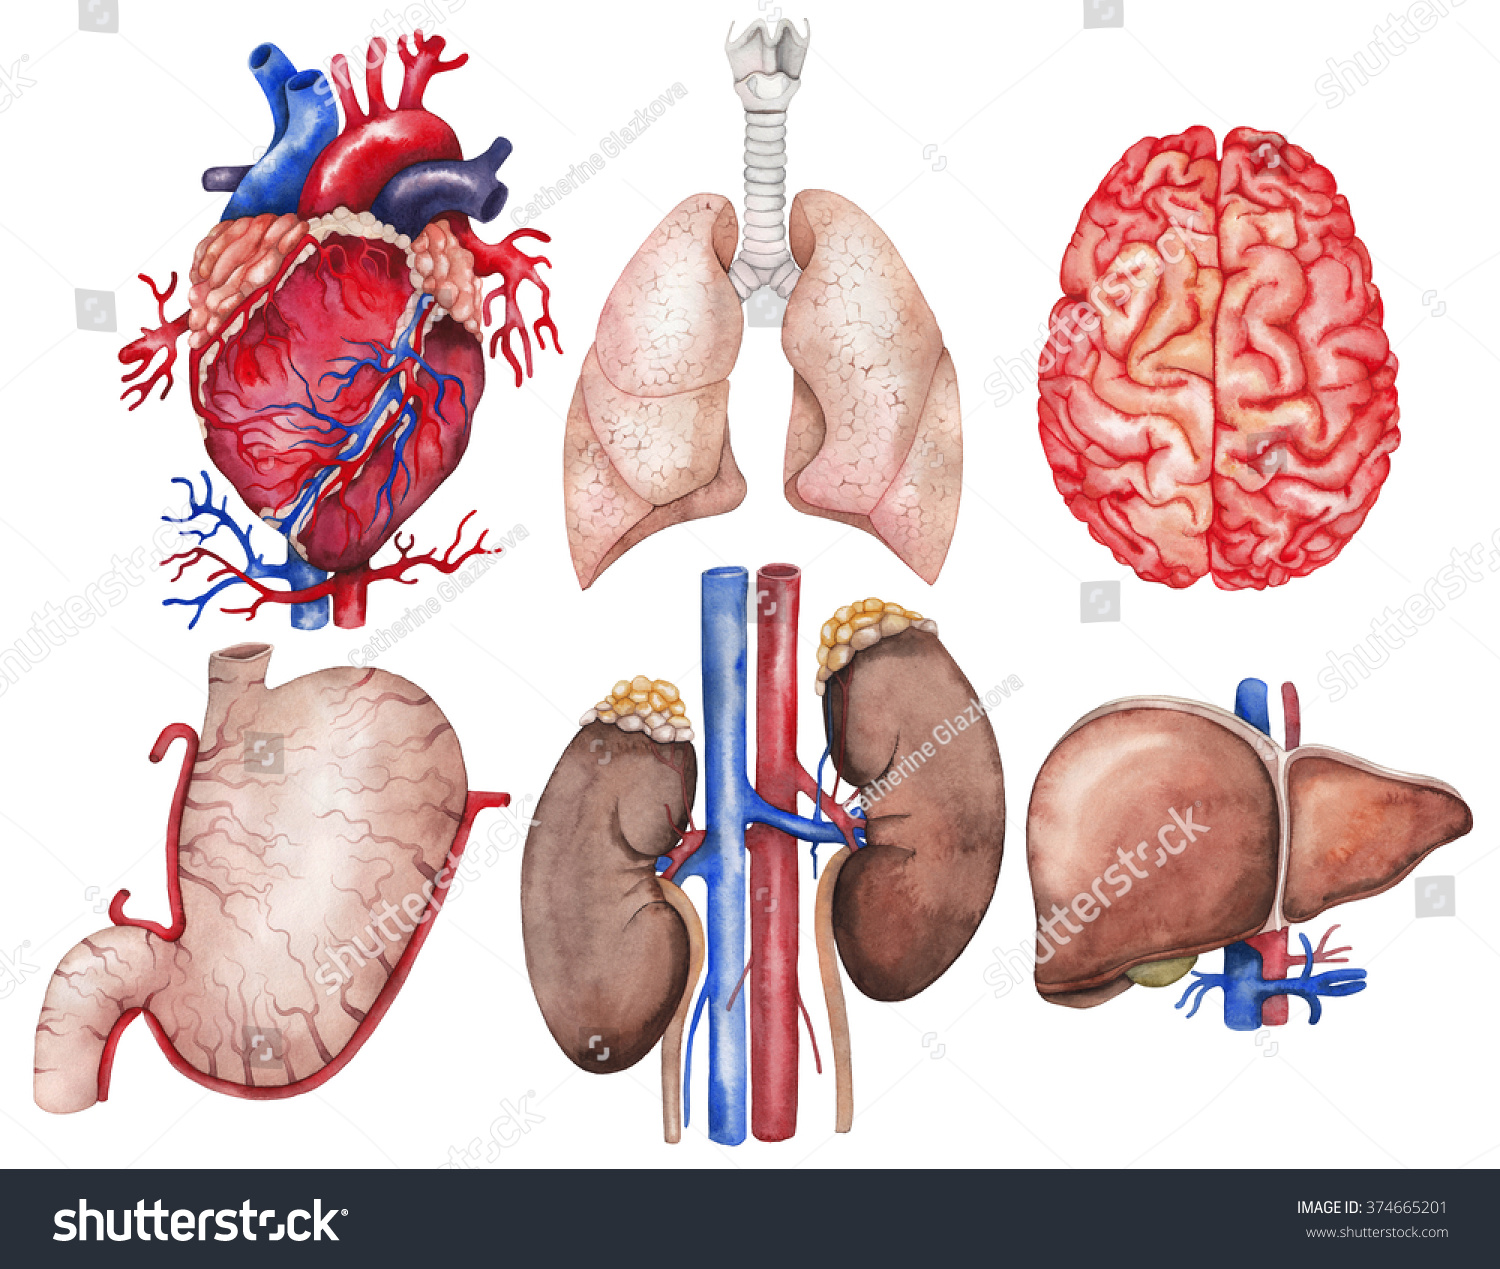 水彩解剖学集合。心脏、肺、大脑、胃、肾、肝